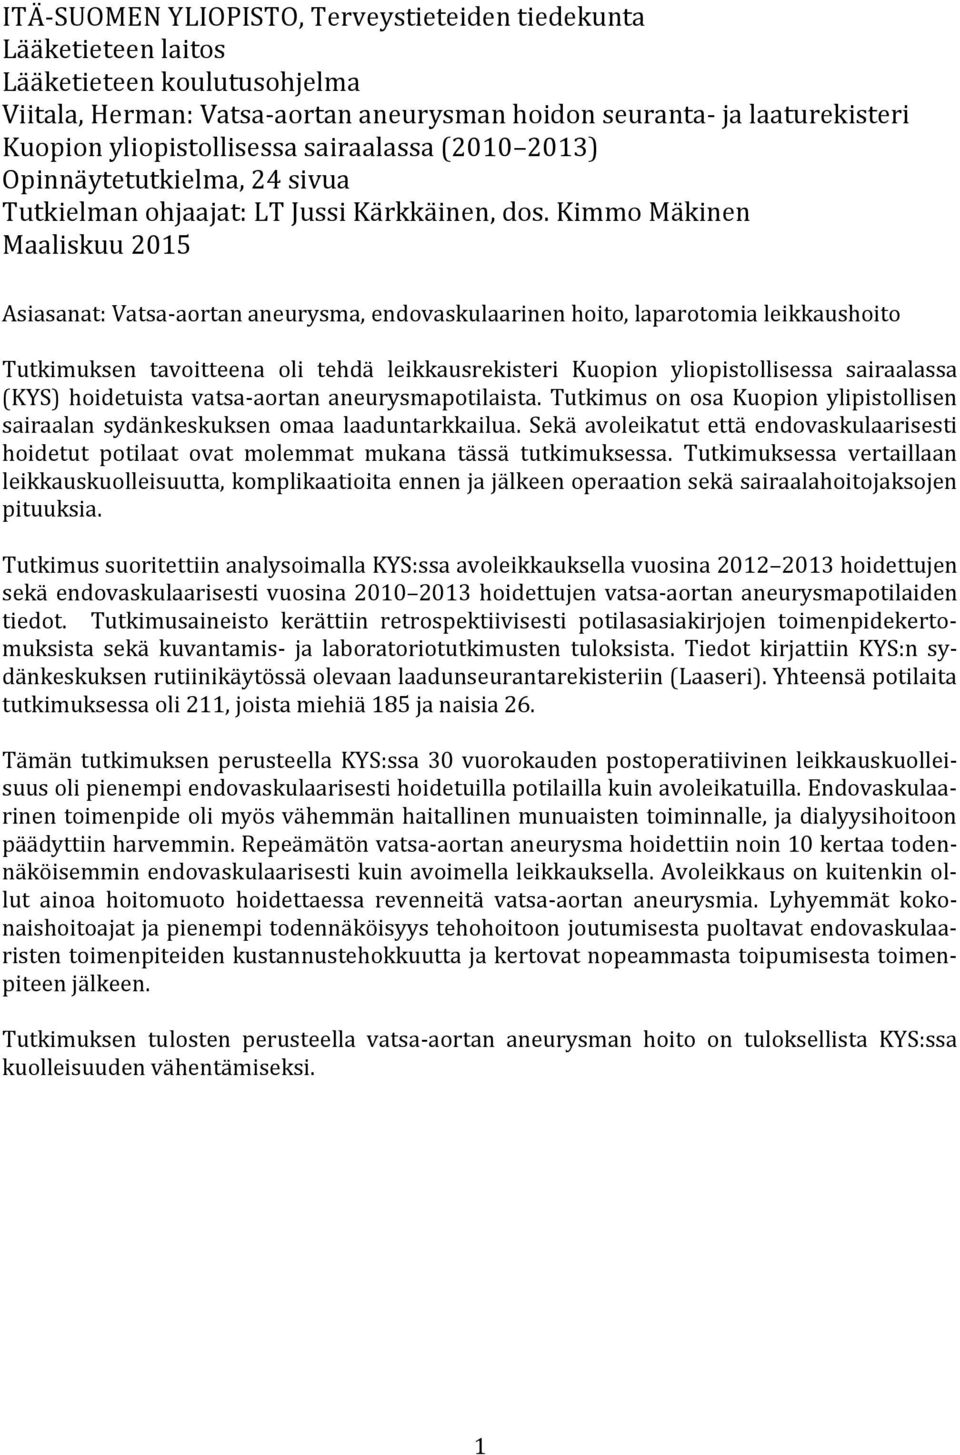 Kimmo Mäkinen Maaliskuu 2015 Asiasanat: Vatsa-aortan aneurysma, endovaskulaarinen hoito, laparotomia leikkaushoito Tutkimuksen tavoitteena oli tehdä leikkausrekisteri Kuopion yliopistollisessa